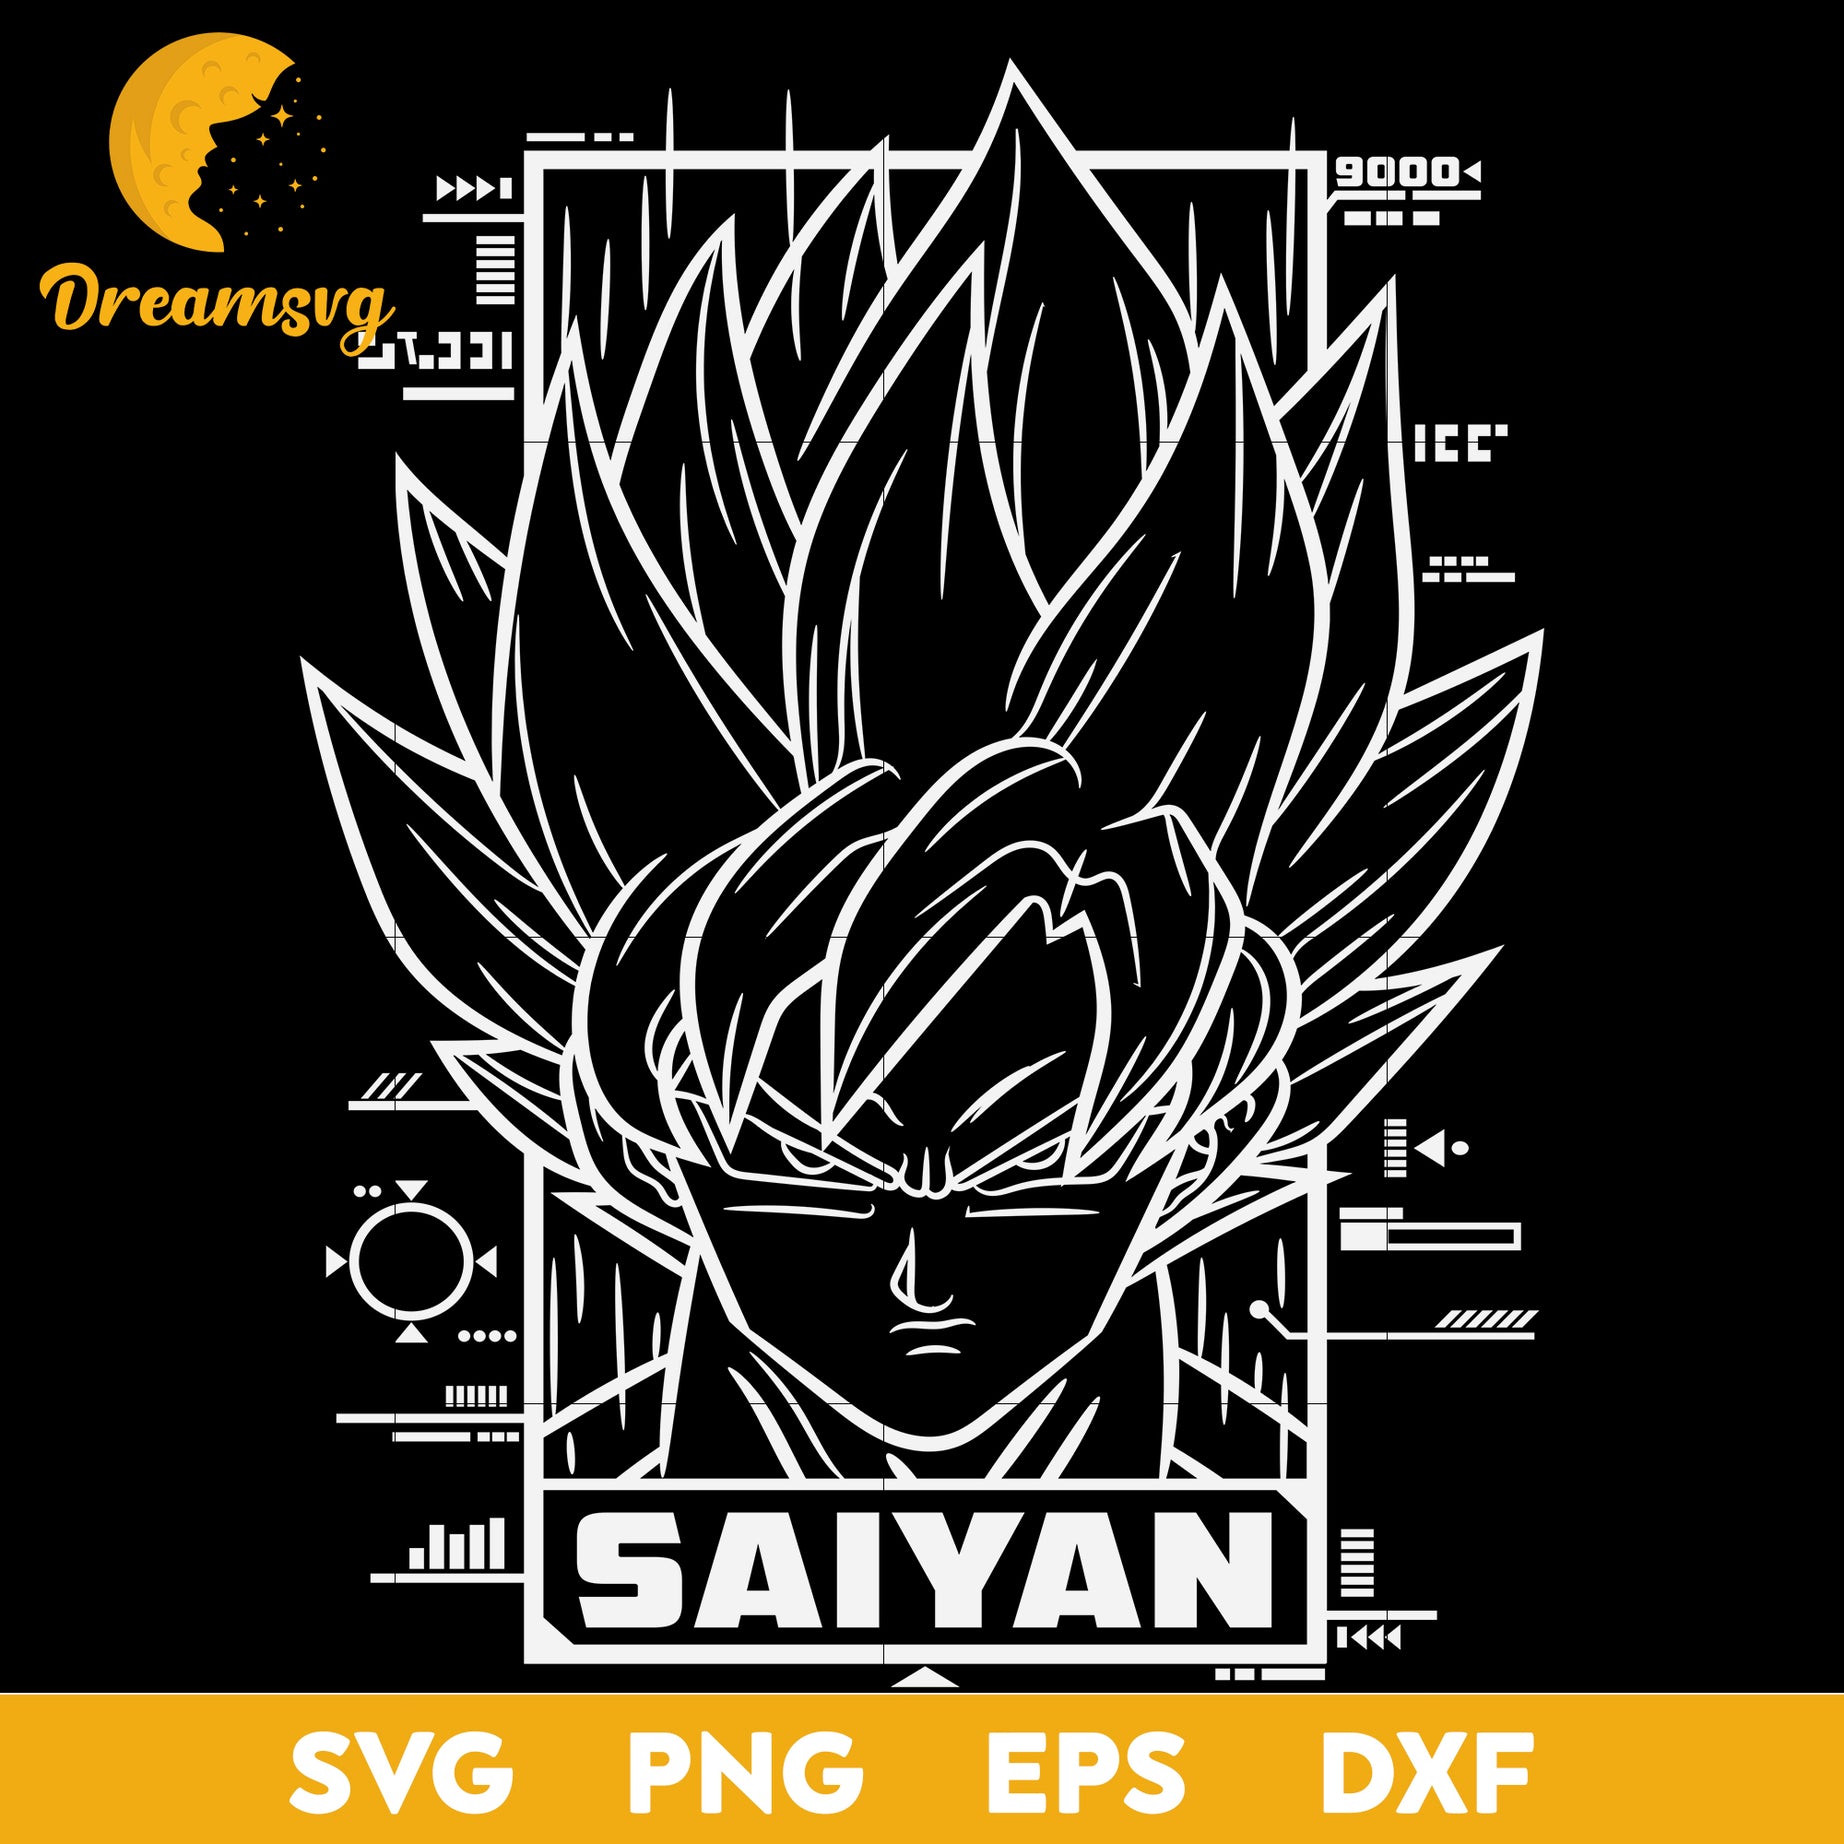 Goku Saiyan Svg, Dragon Ball Z Svg, Goku Svg, Goku Angry Svg, Super Saiyan Svg, file for cricut, Anime svg, png, eps, dxf digital download